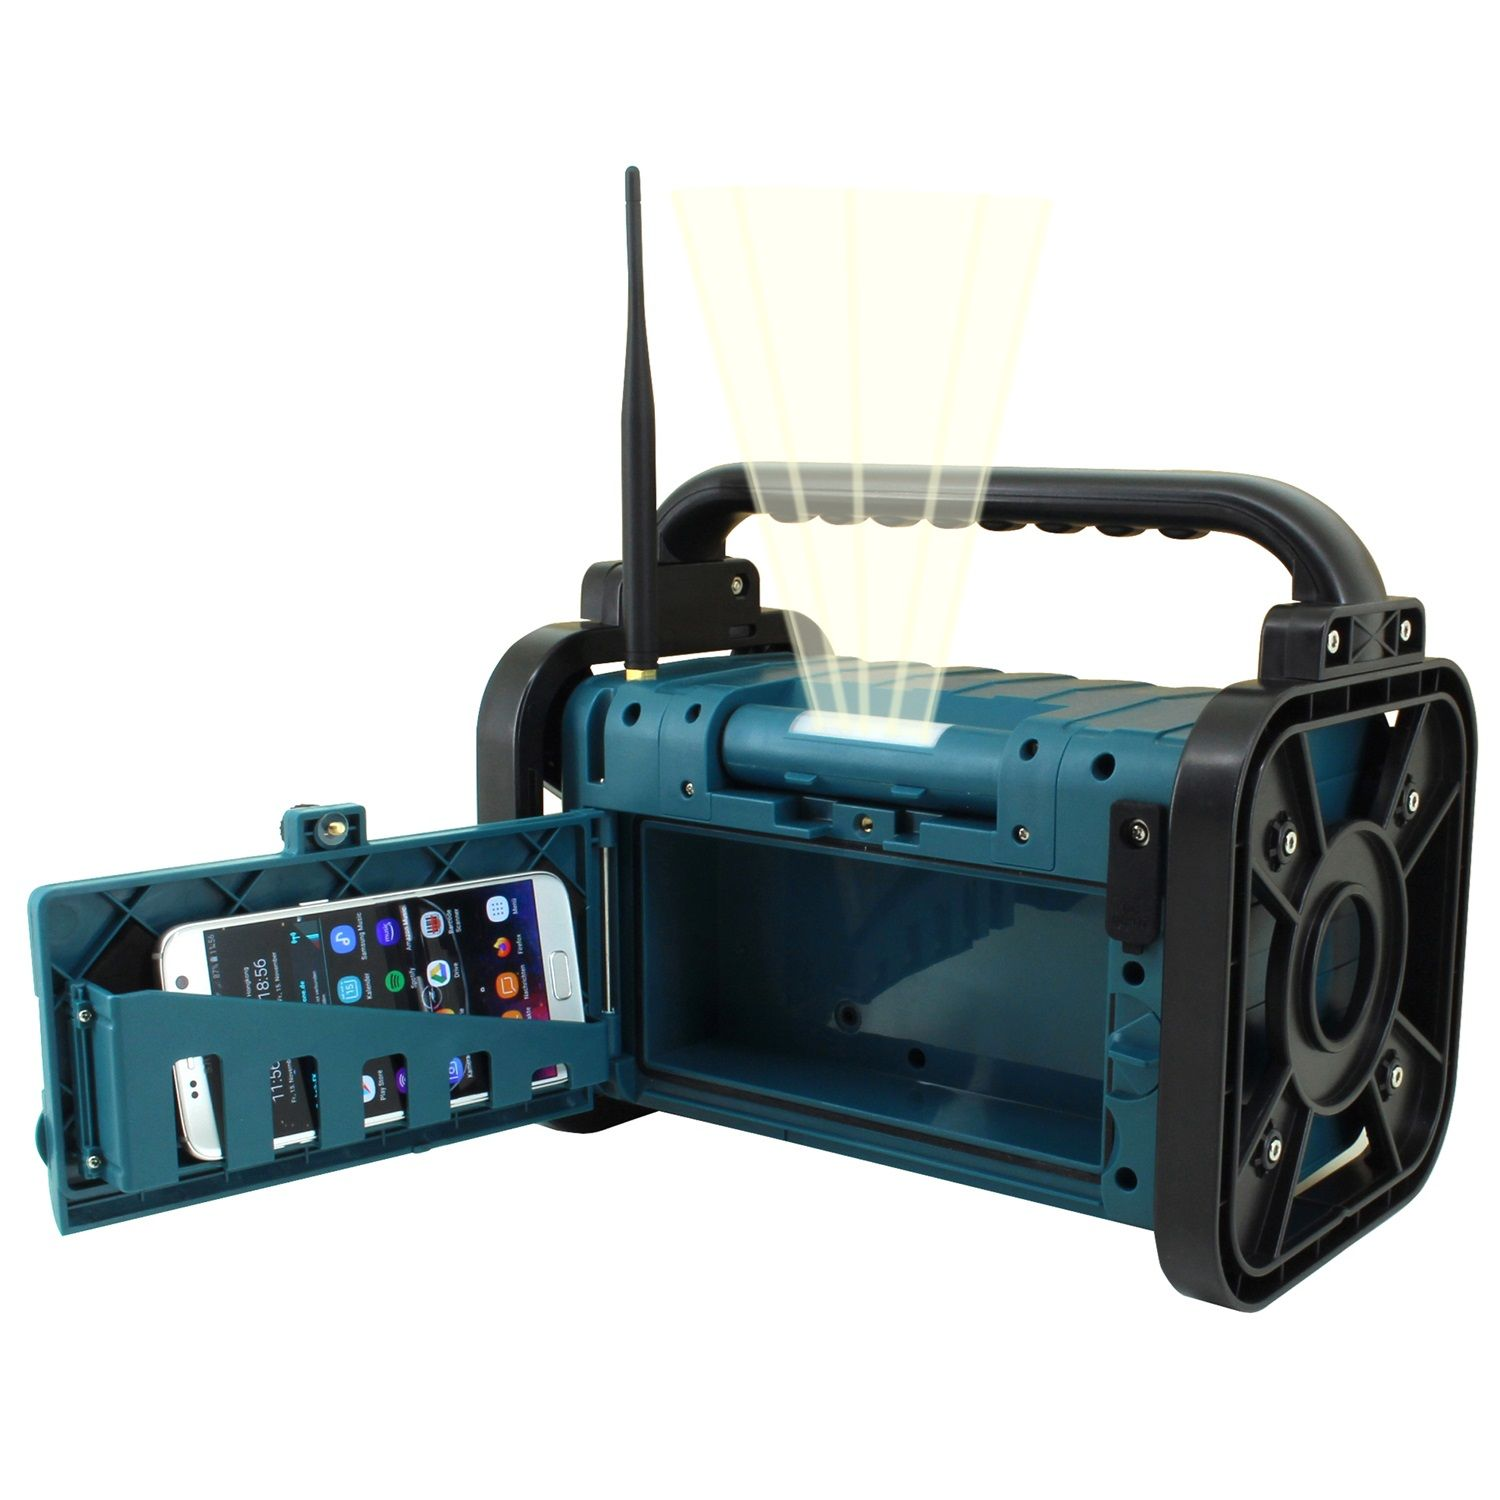 SOUNDMASTER DAB80 Multifunktionsradio, DAB, DAB+, FM, DAB+, Bluetooth, FM, blau AM